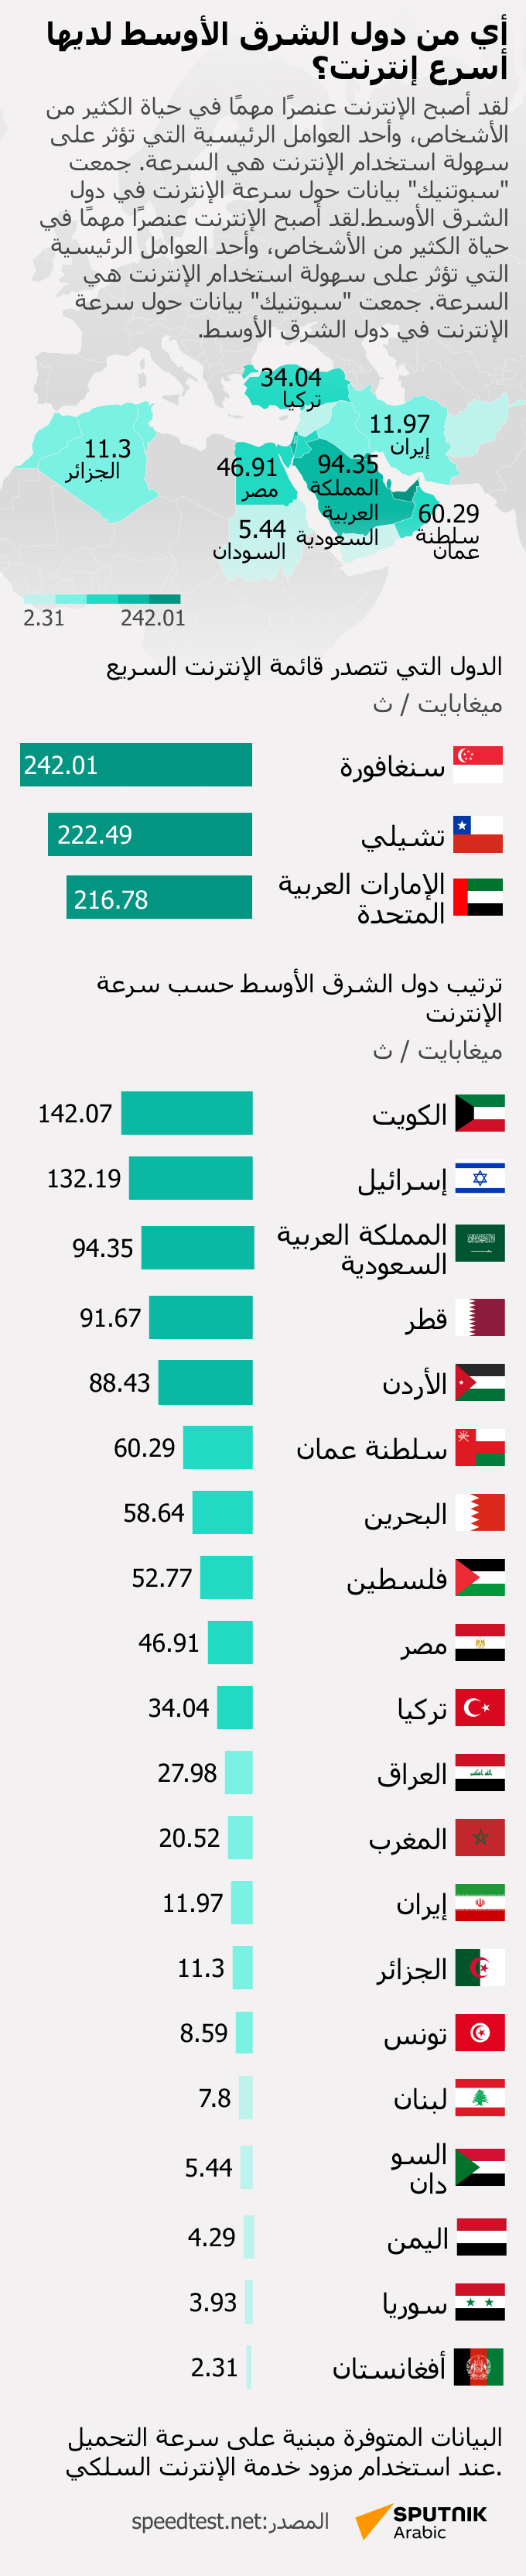 أي من دول الشرق الأوسط لديها أسرع إنترنت؟ - سبوتنيك عربي